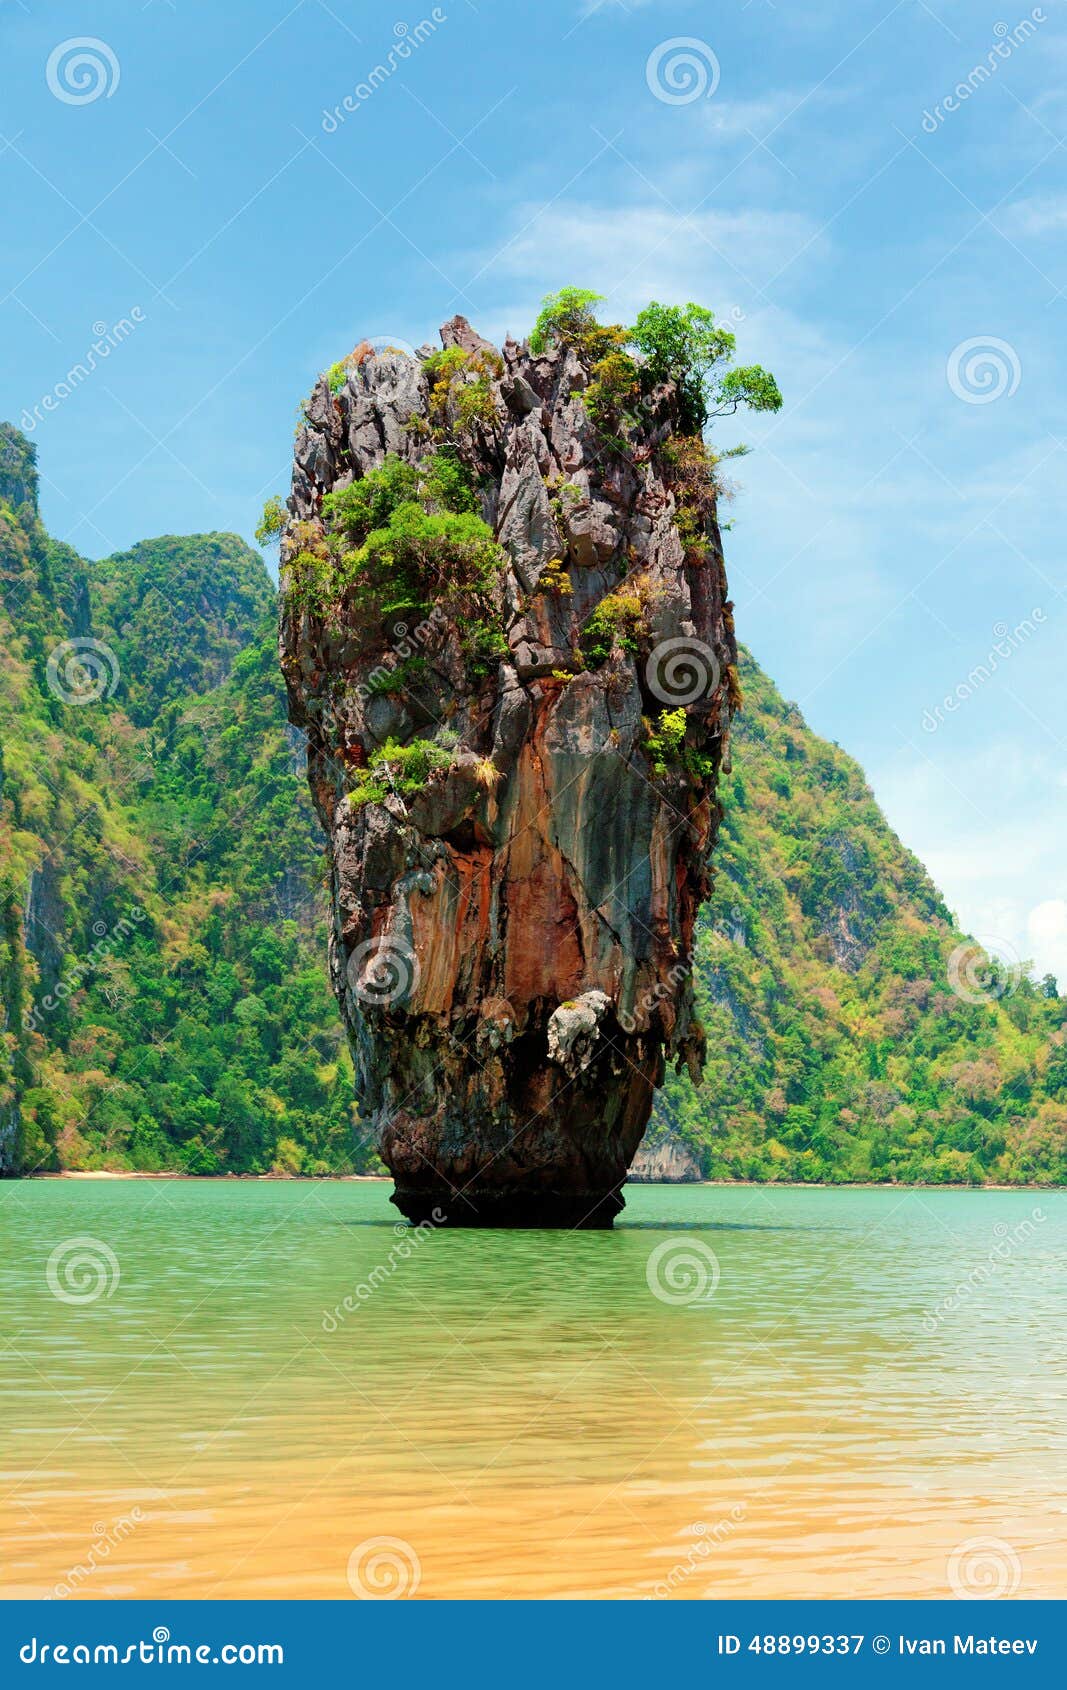 Formindske Følg os Skaldet James Bond Island, Thailand Stock Image - Image of island, andaman: 48899337